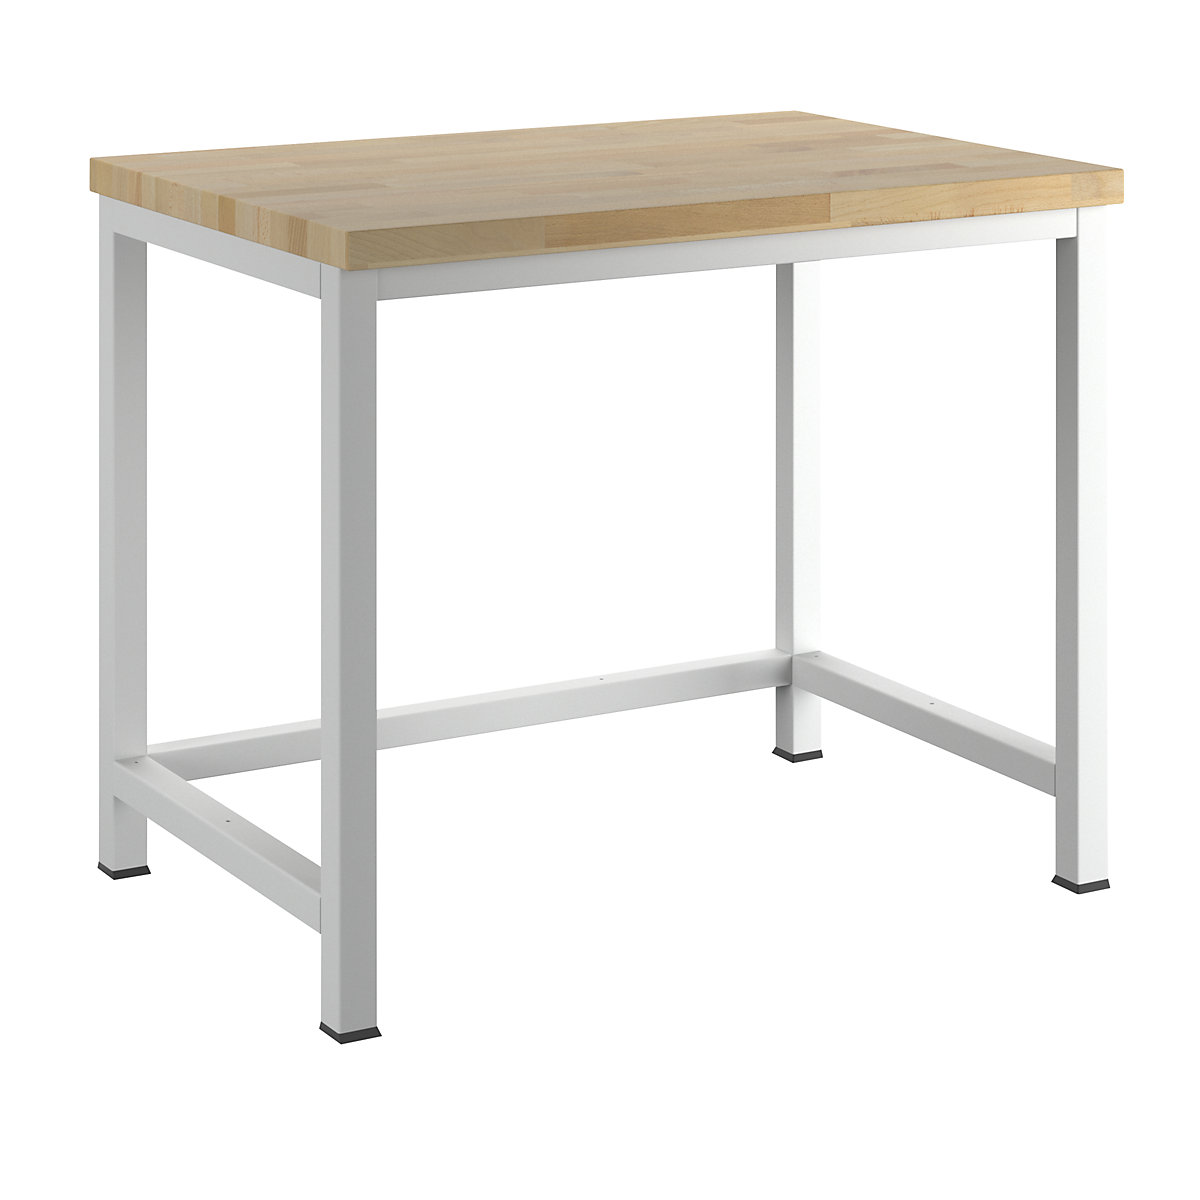 Stół warsztatowy, konstrukcja ramowa – RAU